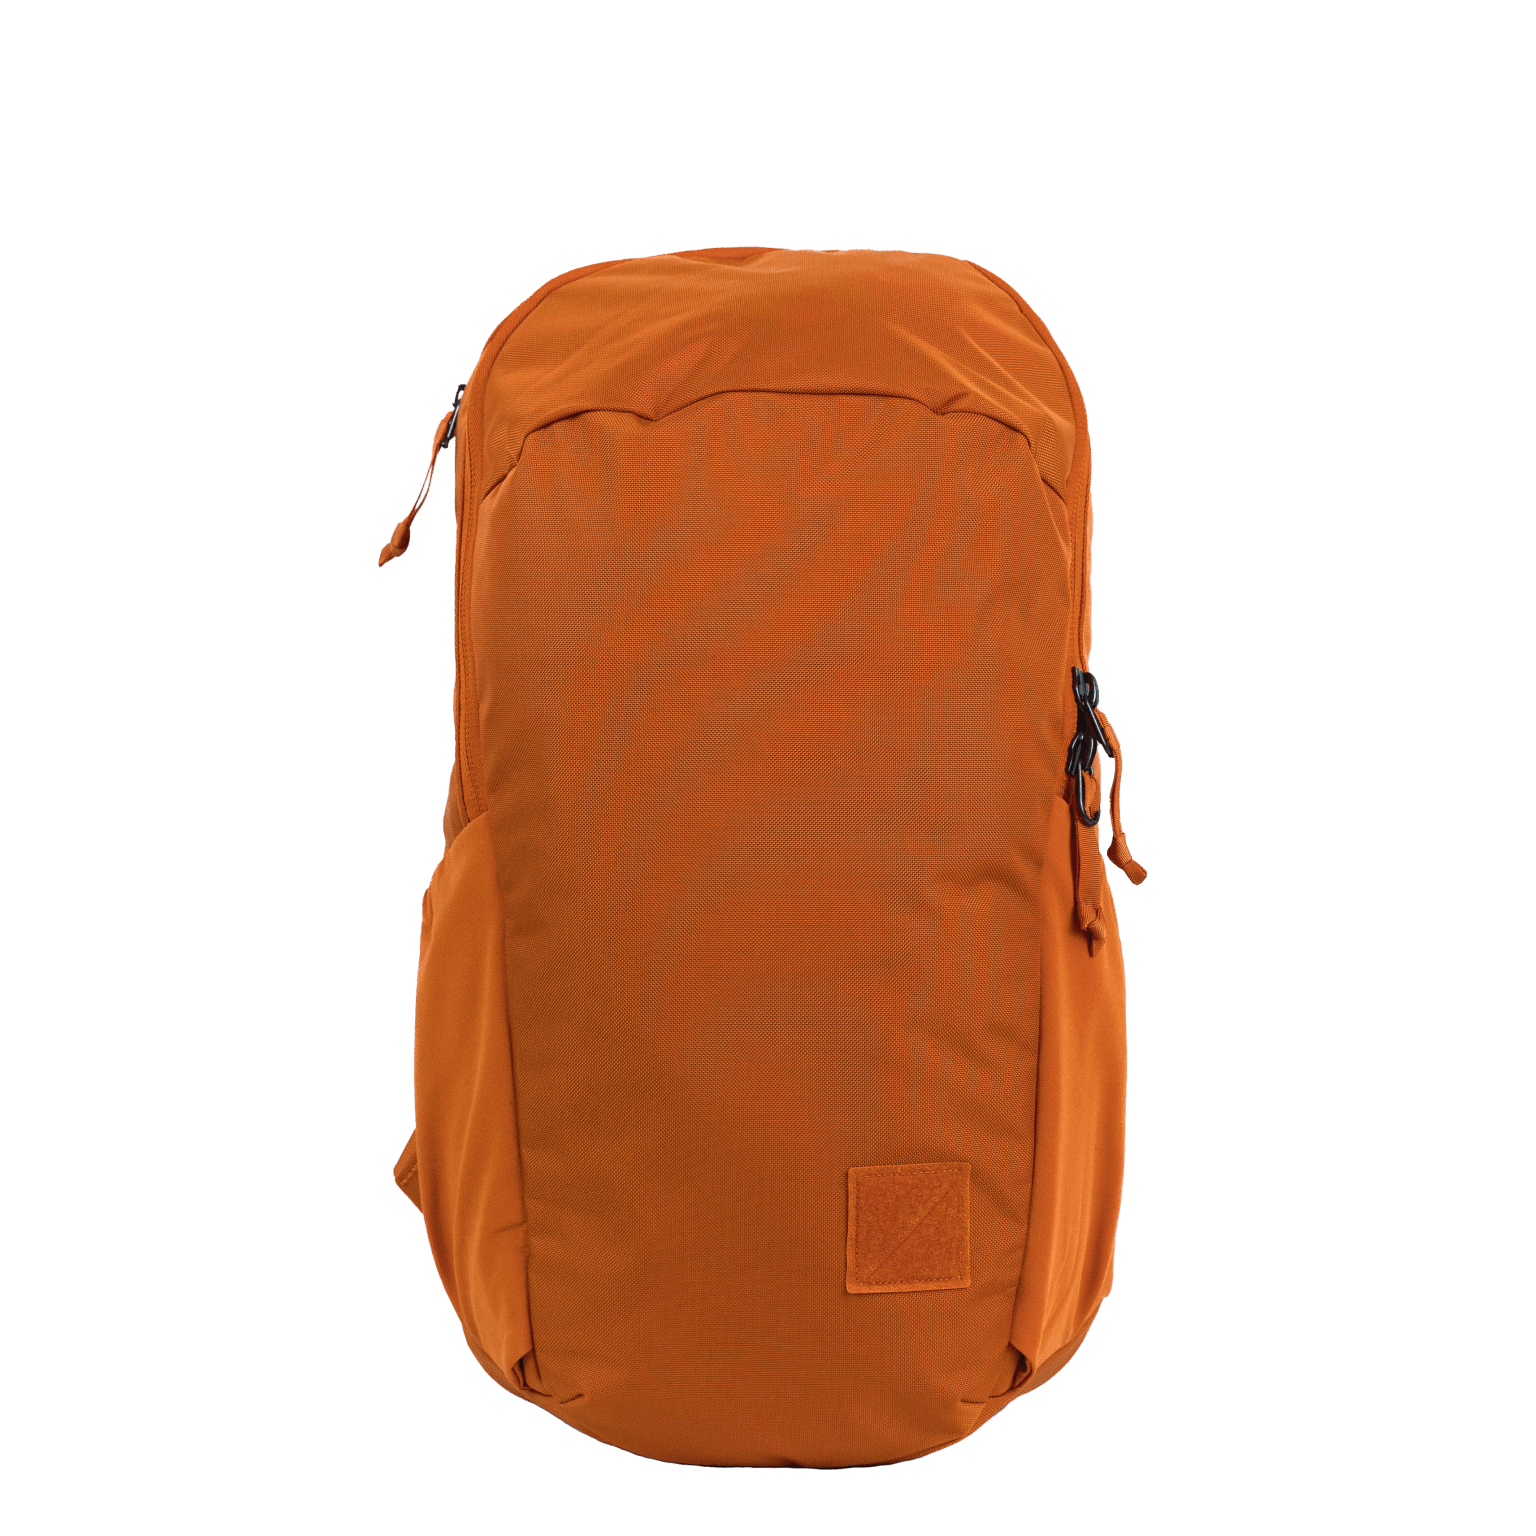  Rain Slicker For Designer Handbags in Clear (Half